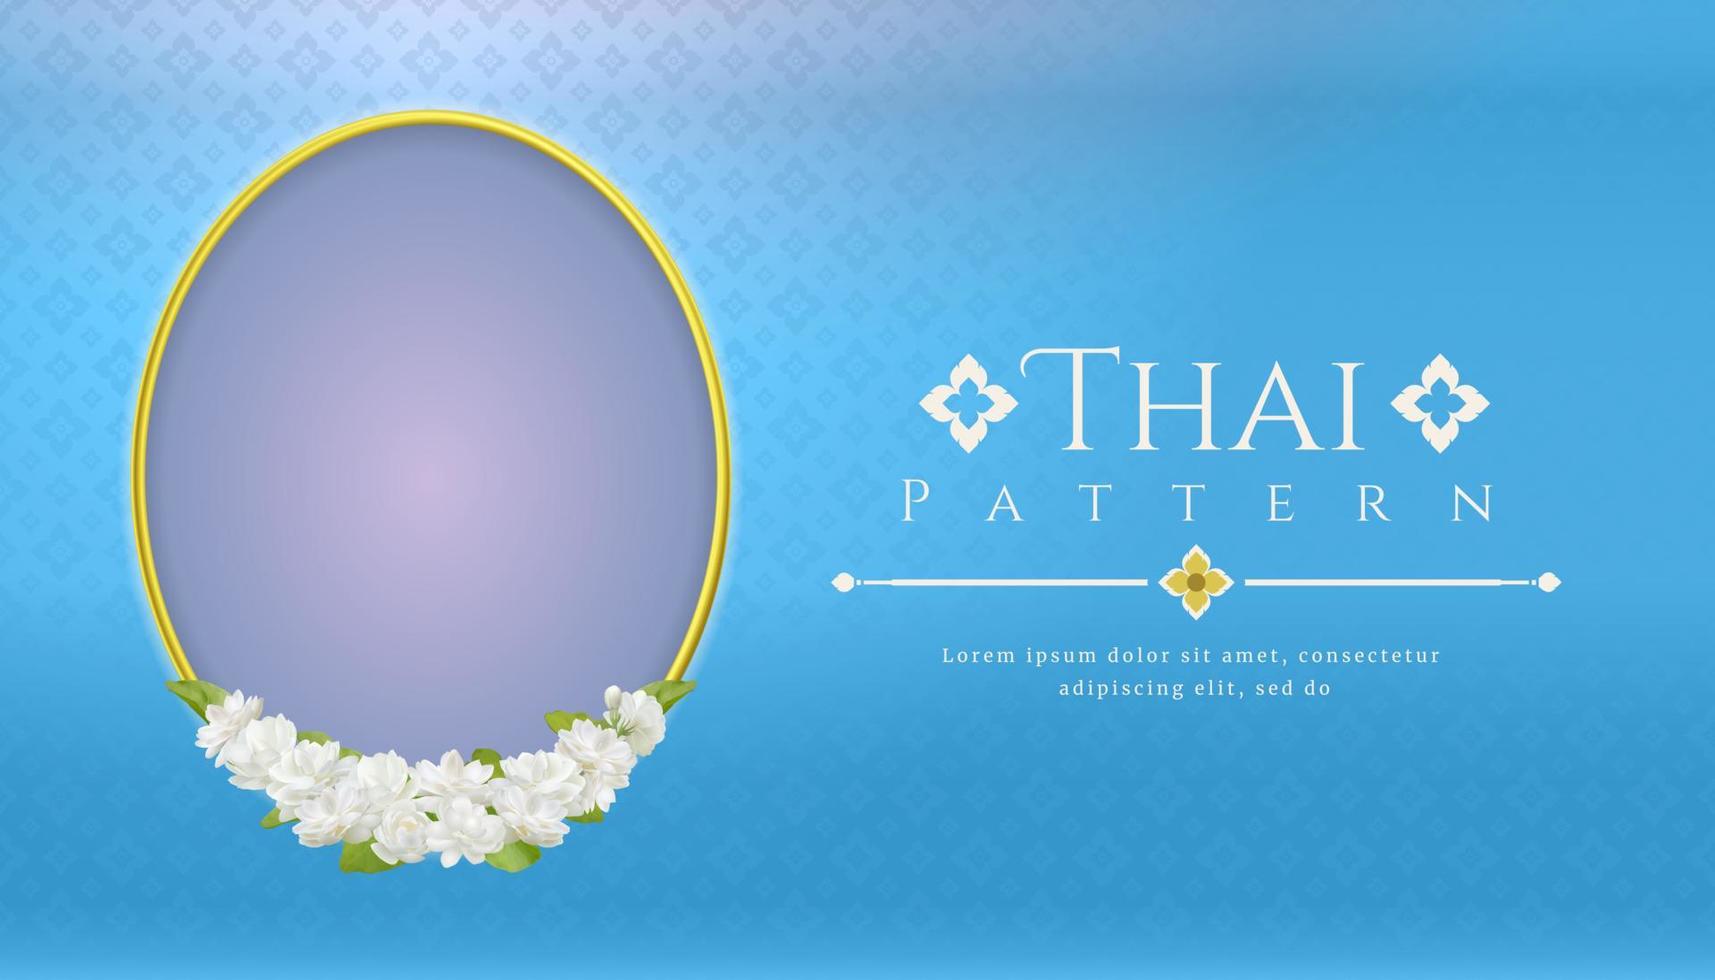 modelo de fundo para o dia das mães tailândia com conceito tradicional de padrão tailandês de linha moderna e moldura linda flor de jasmim vetor